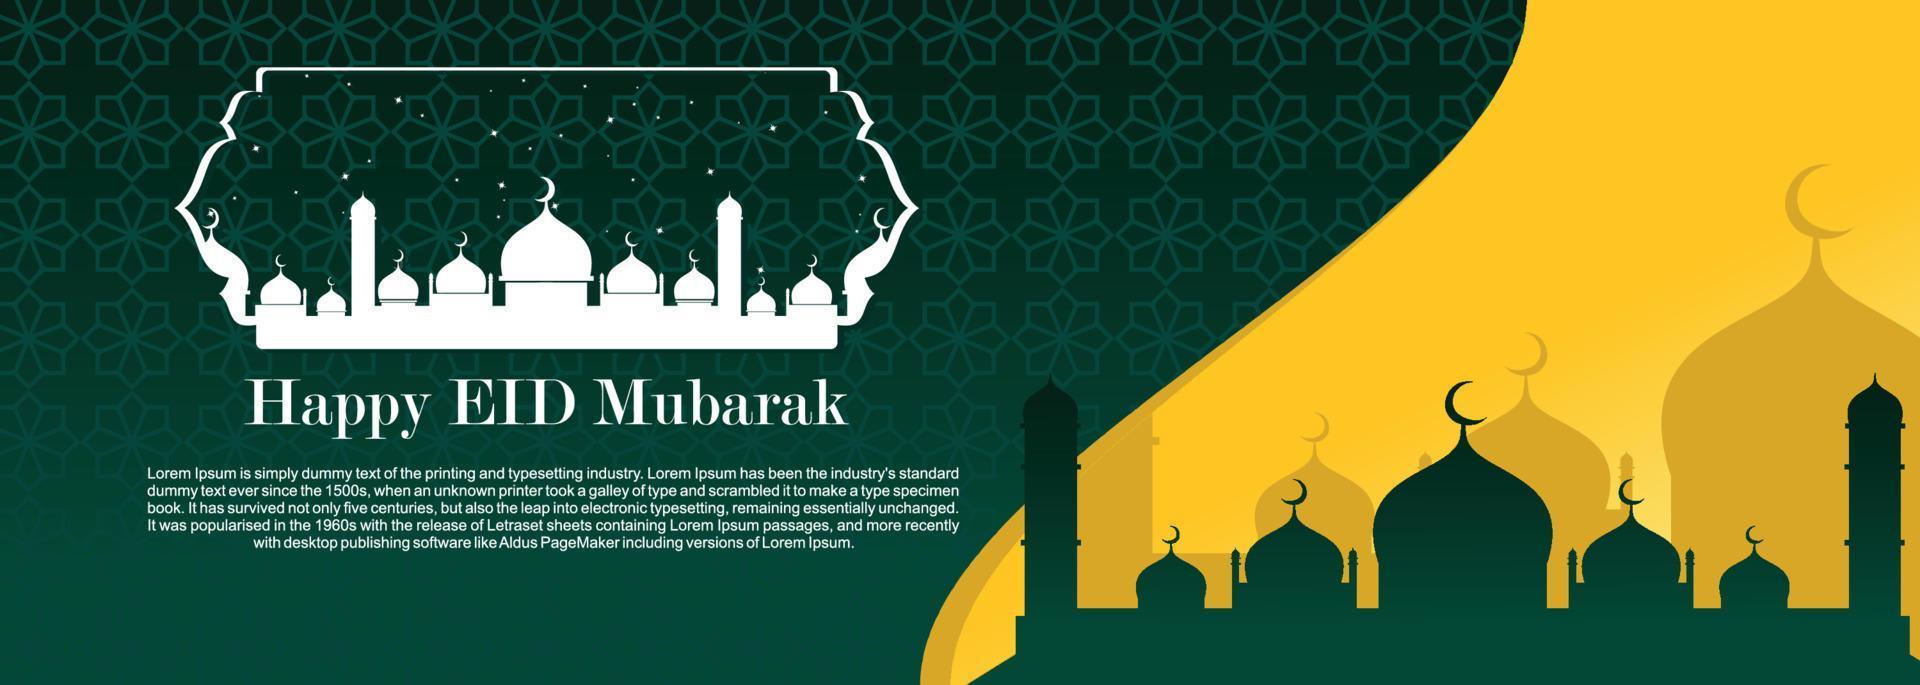 fundo islâmico de eid mubarak, feliz ilustração de banner de eid mubarak, celebração islâmica de religião de cartão de saudação muçulmana. caligrafia árabe moderna vetor